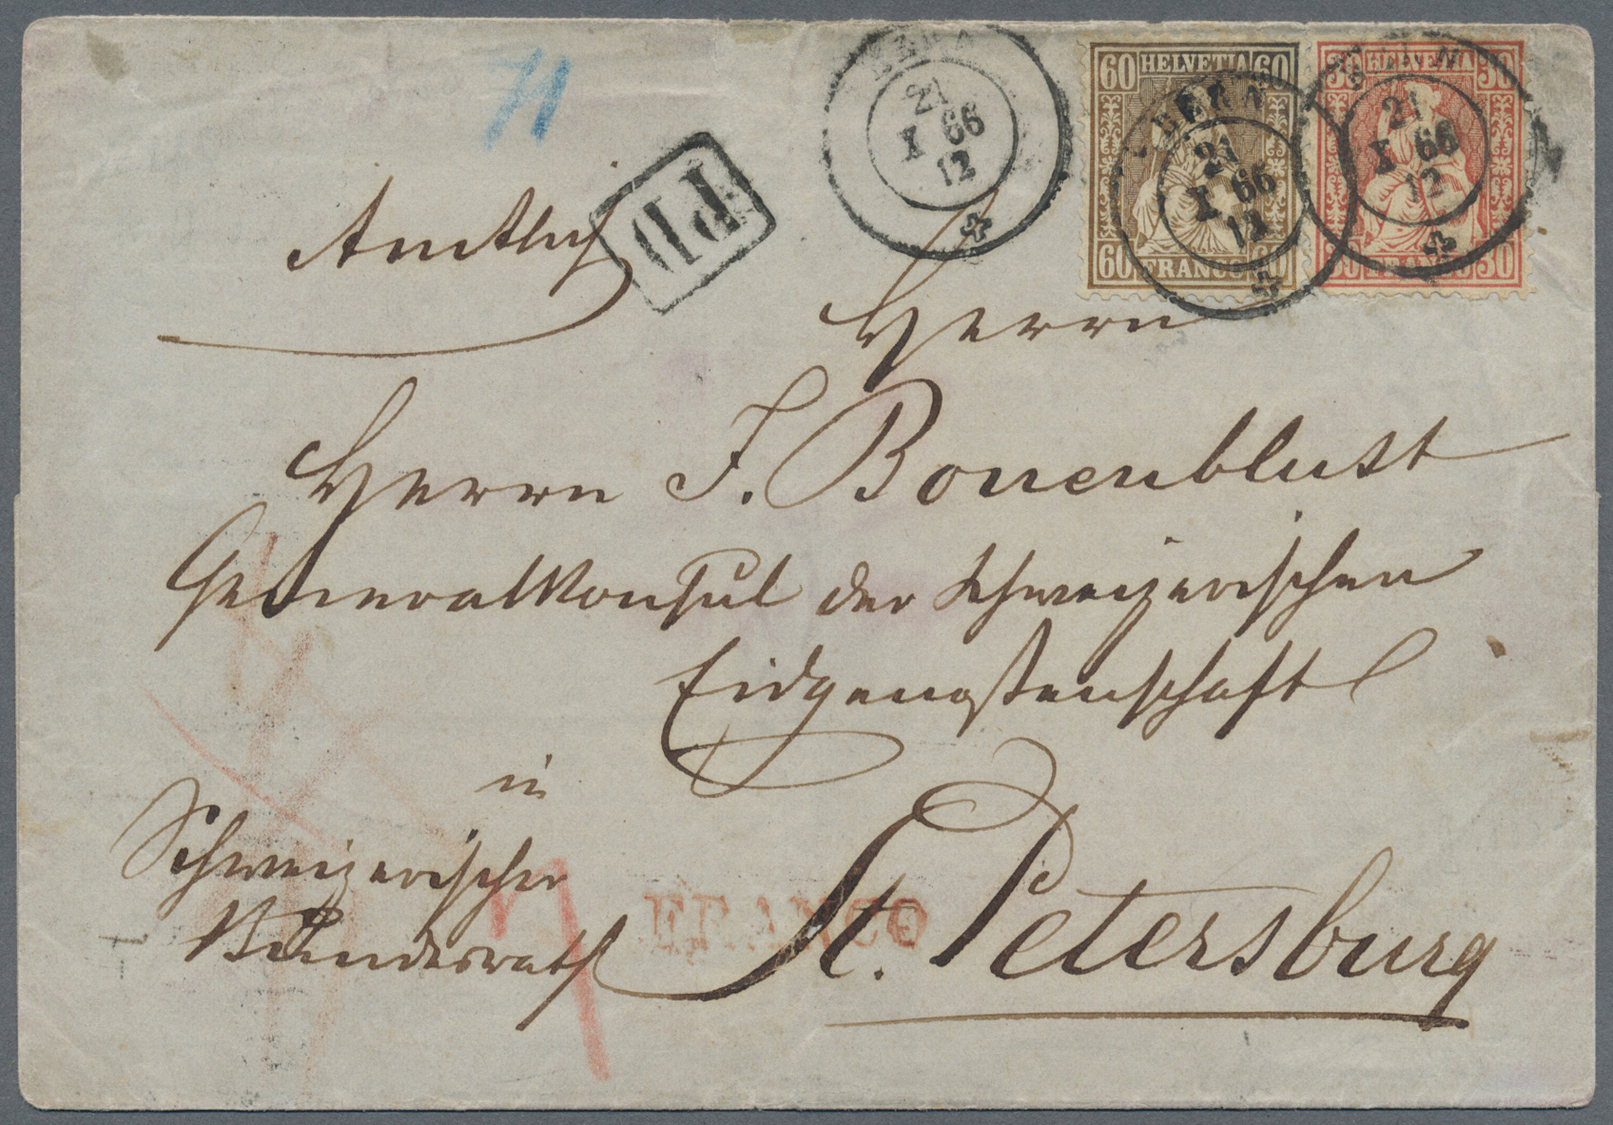 Br Schweiz: 1862 Sitzende Helvetia 60 Rp. Kupferbronze Zusammen Mit 30 Rp. Zinnober Auf Faltbriefhülle 1866 Von B - Unused Stamps